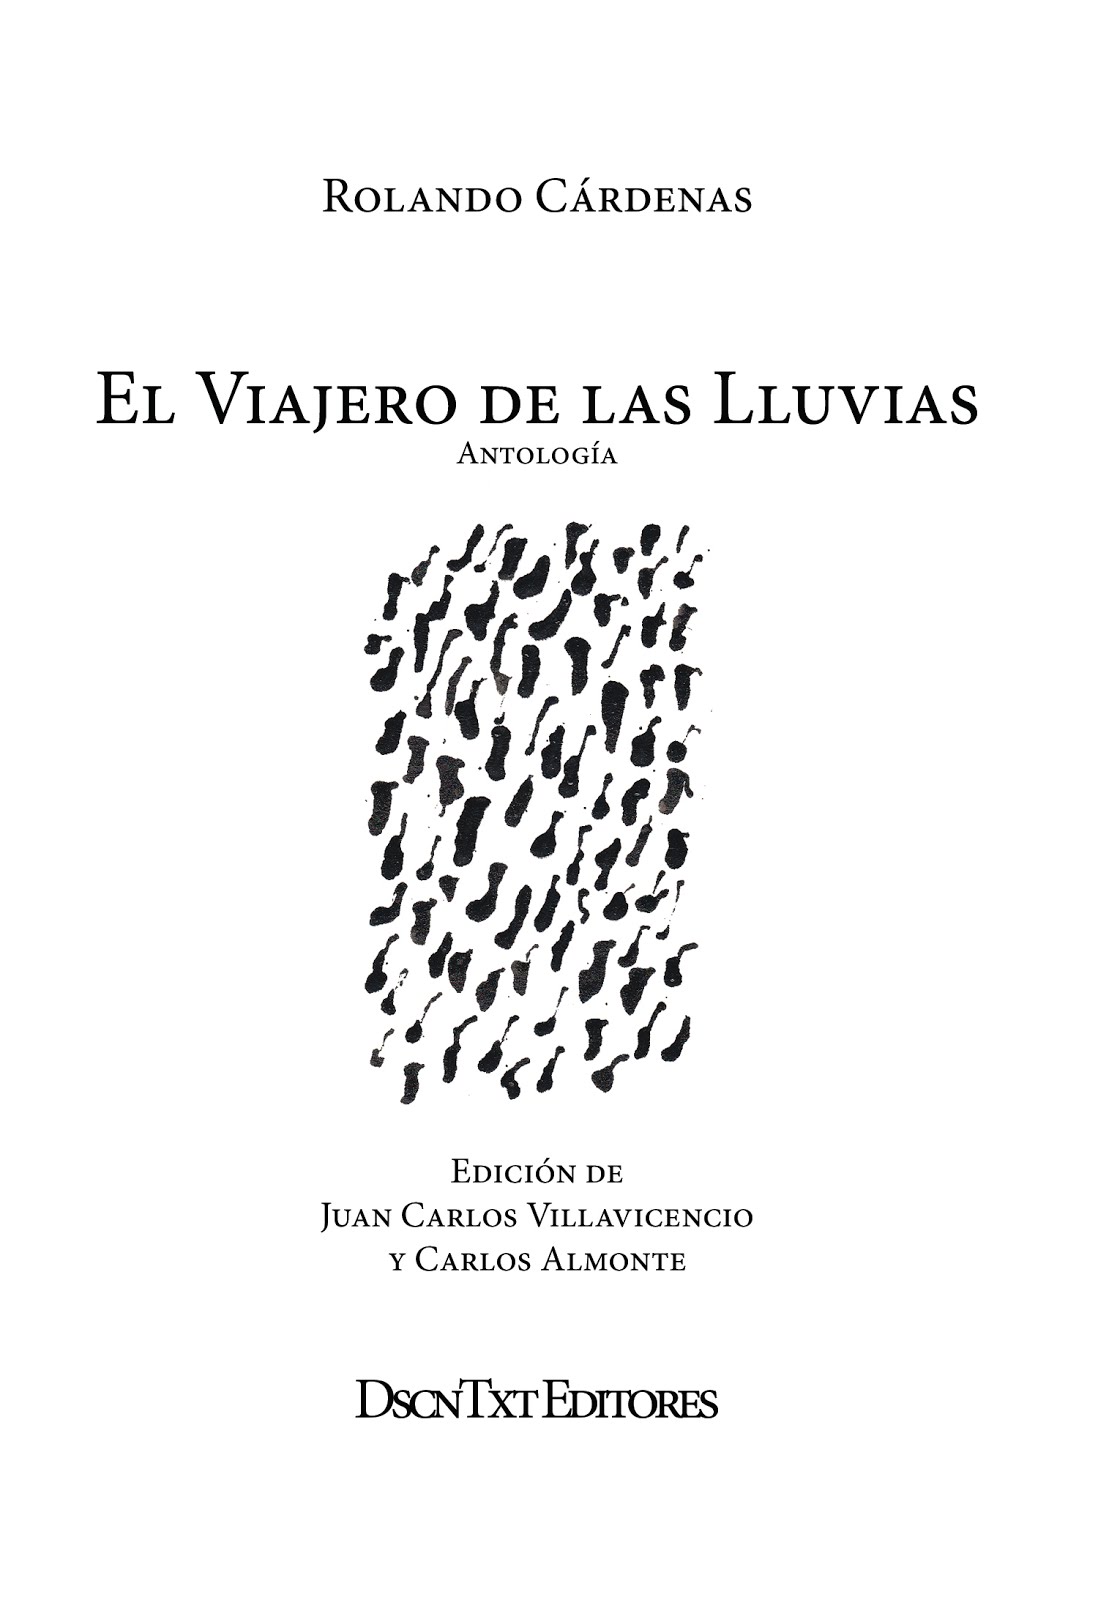 El viajero de las lluvias, de Rolando Cárdenas. Edición de Almonte y Villavicencio